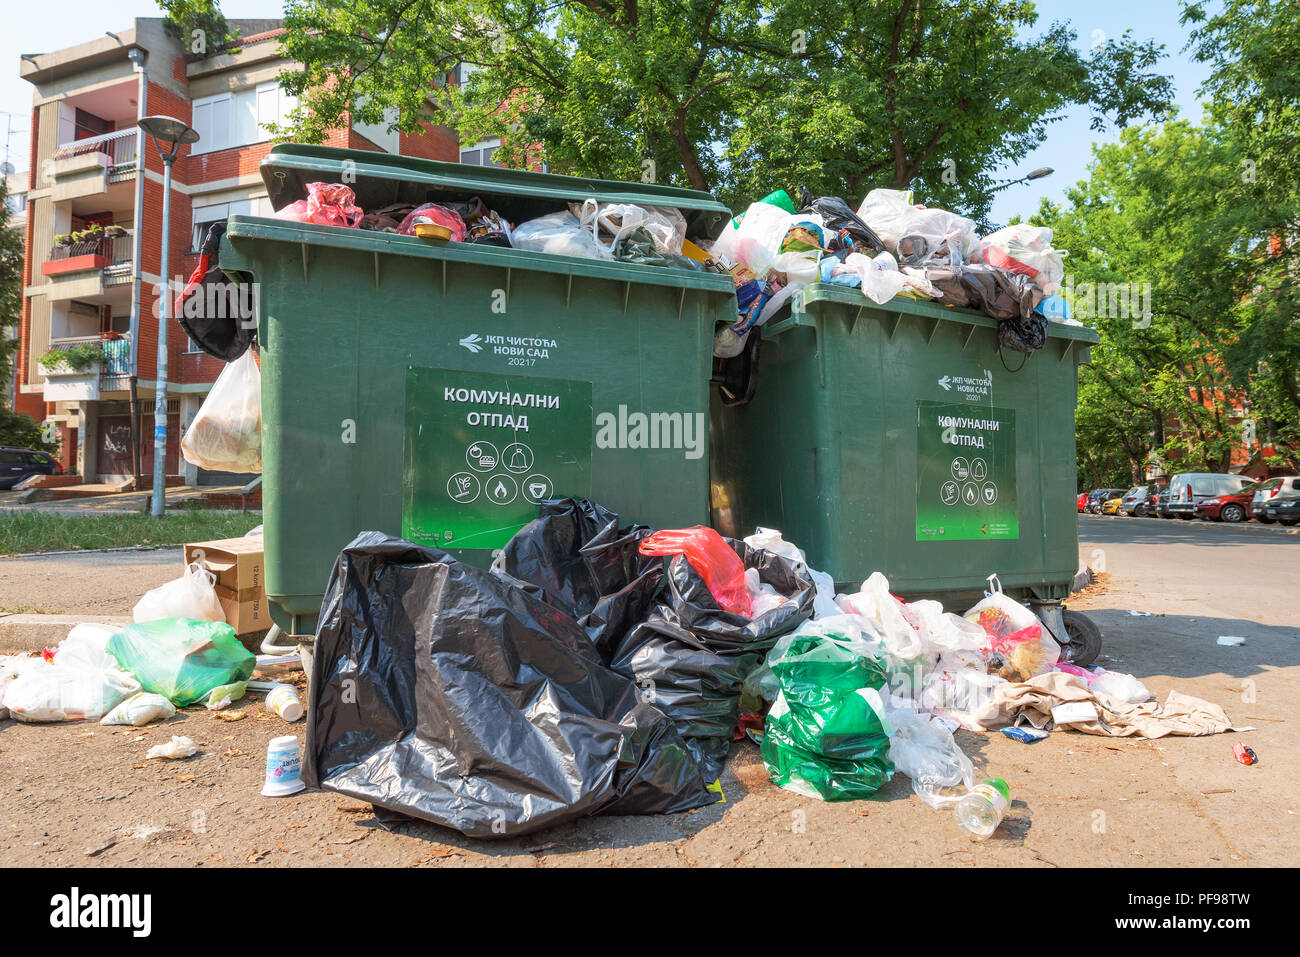 NOVI SAD, Serbien - 18. AUGUST 2018: Kommunaler Festmüll oder kommunalen Müll ist überfüllt Container in Novi Sad an Wochenenden, illustrative bearbeiten Stockfoto